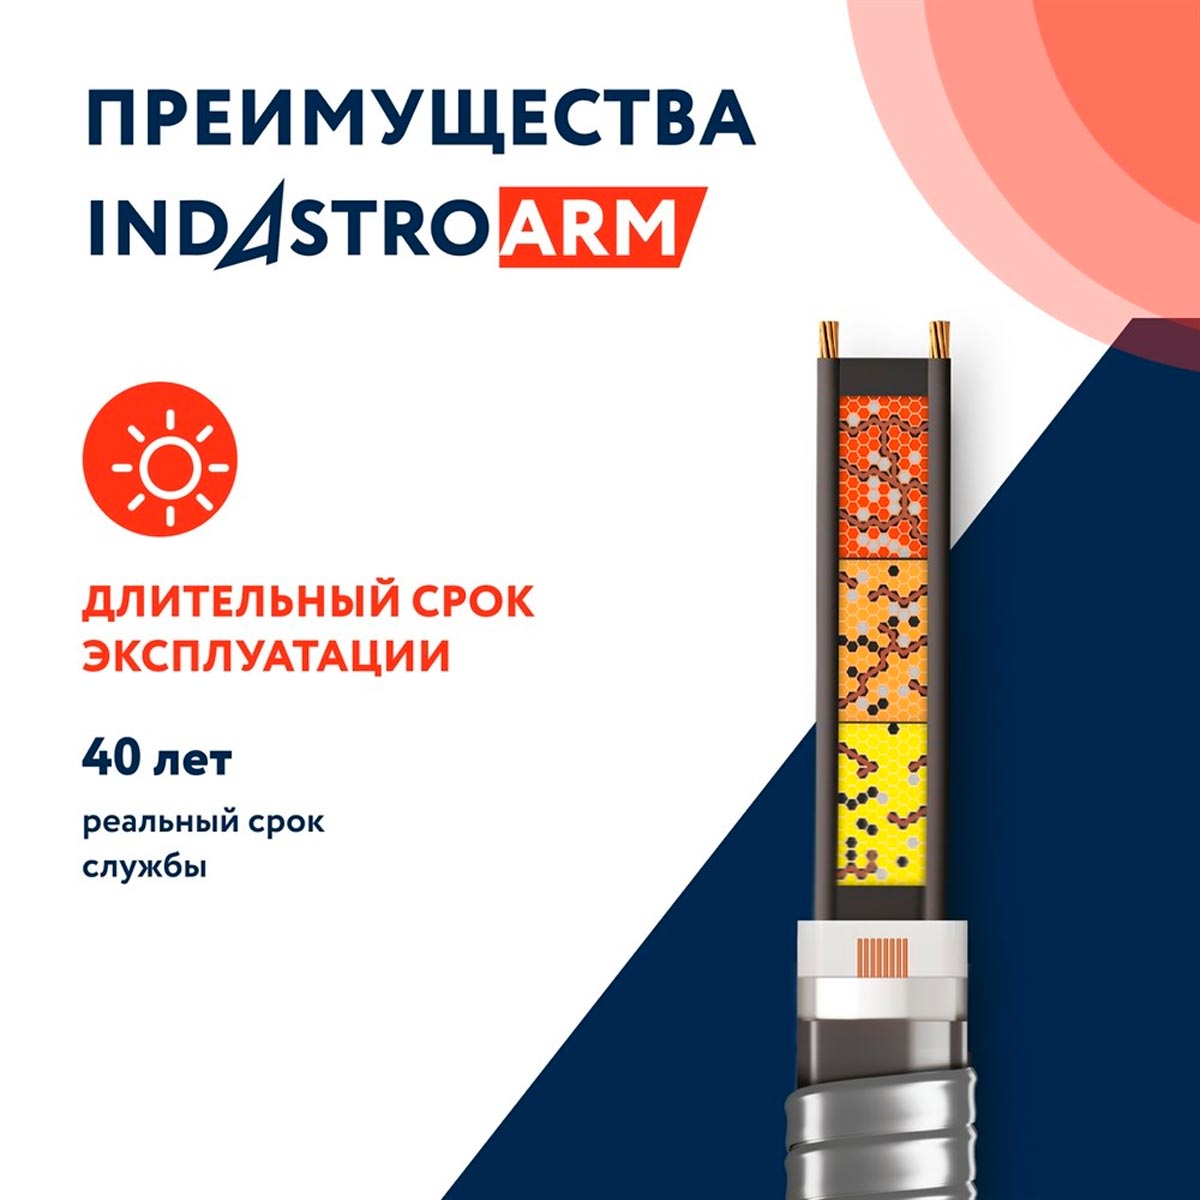 Греющий кабель ССТ 33IndAstro ARM2-PAT-S